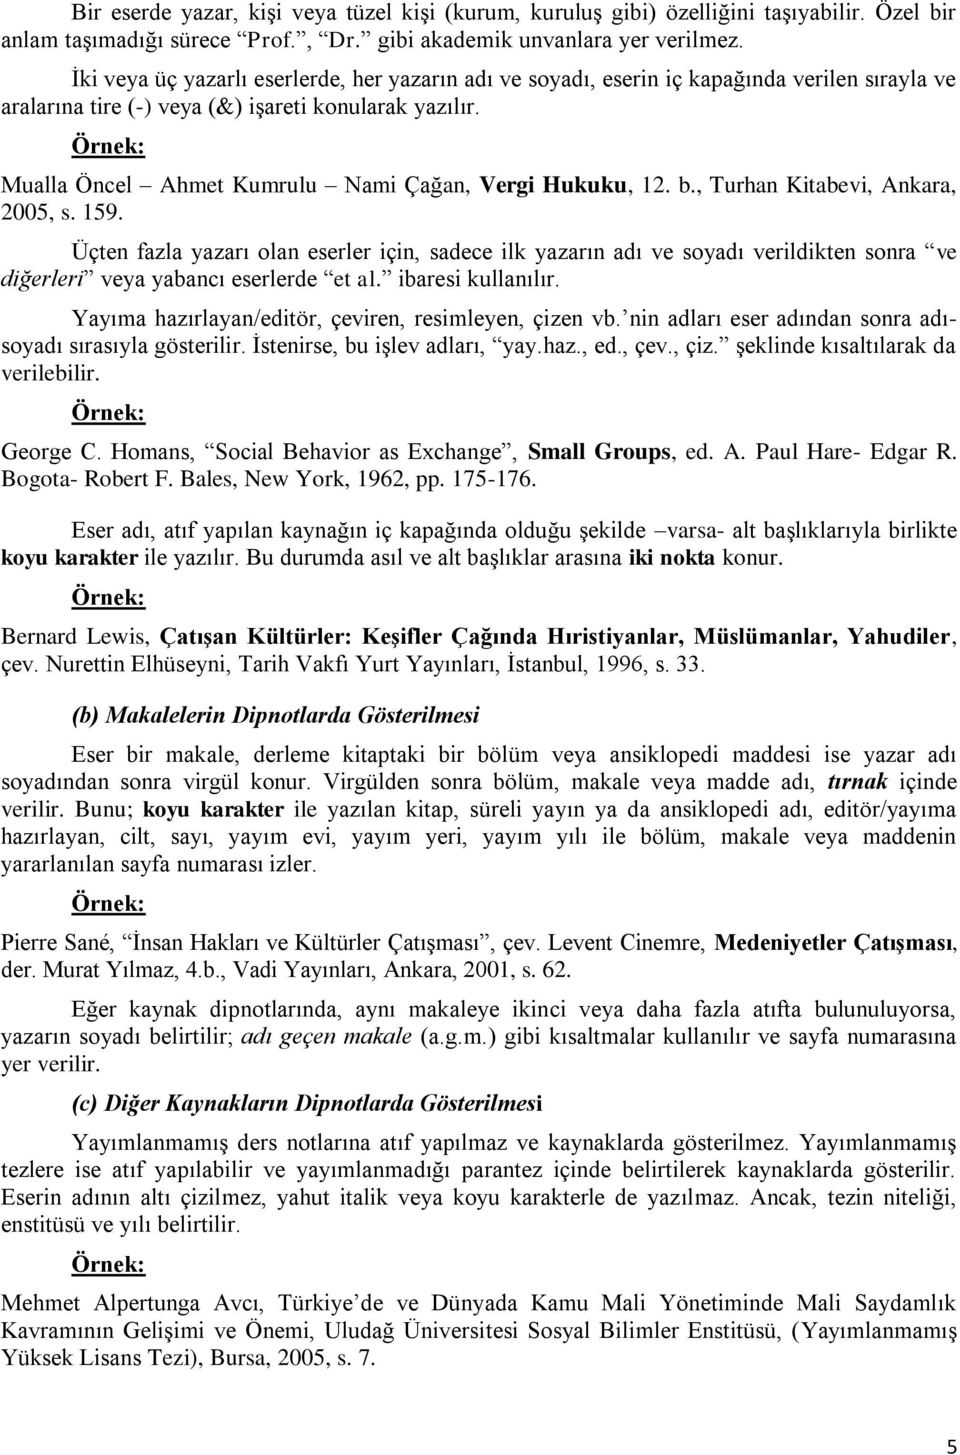 Mualla Öncel Ahmet Kumrulu Nami Çağan, Vergi Hukuku, 12. b., Turhan Kitabevi, Ankara, 2005, s. 159.